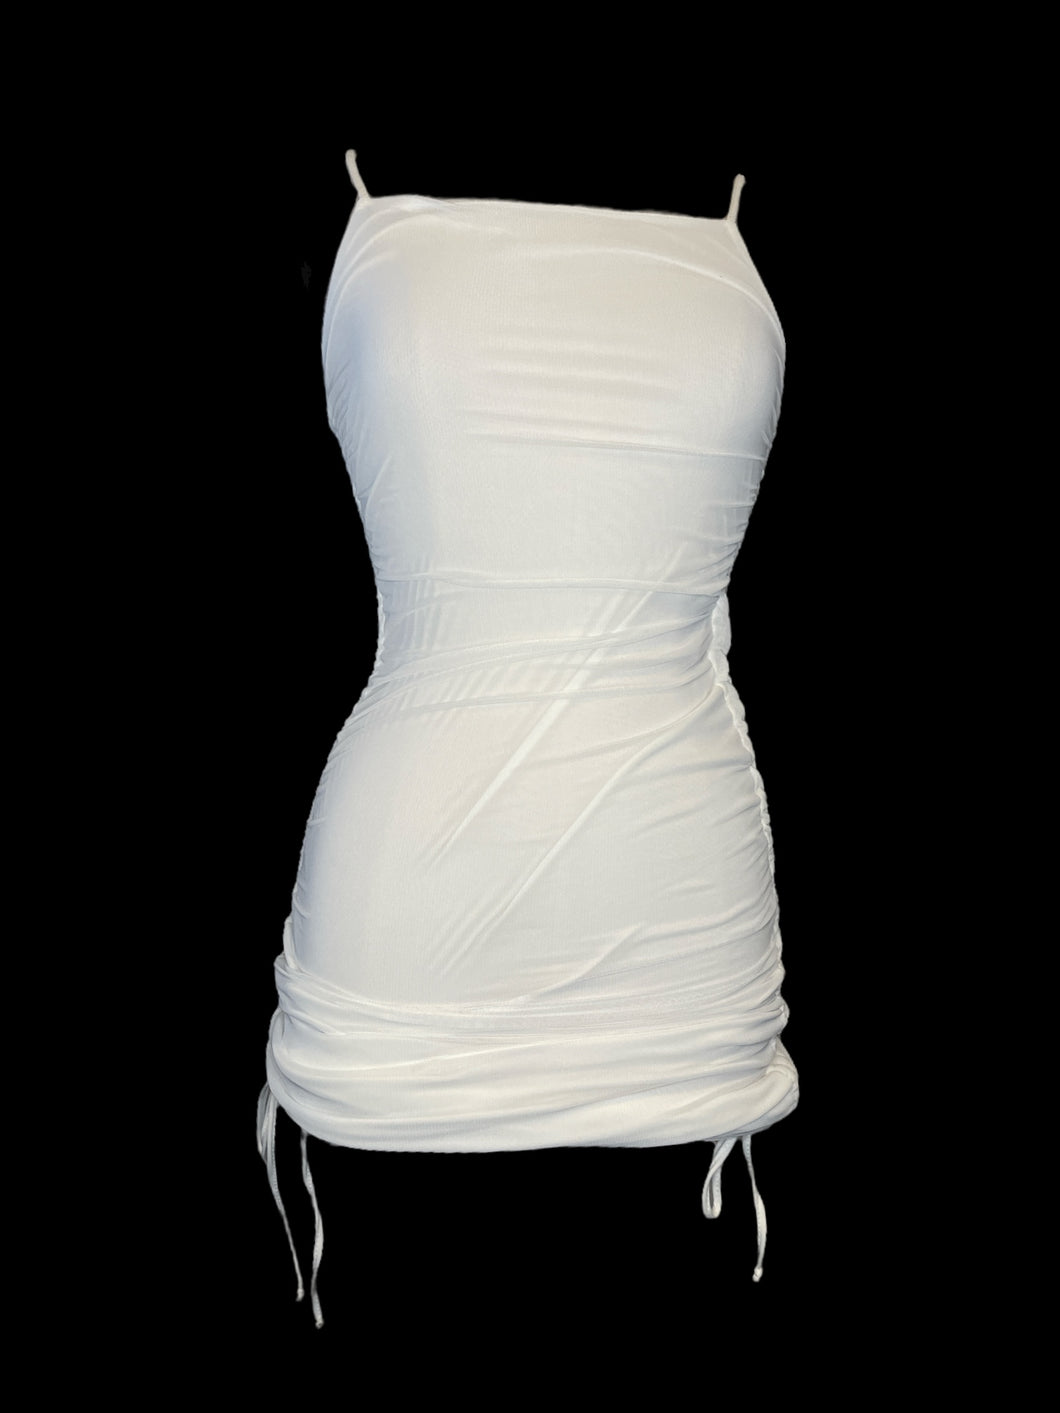 S NWT White sleeveless bodycon mesh dress w/ white lining, adjustable straps, & drawstring